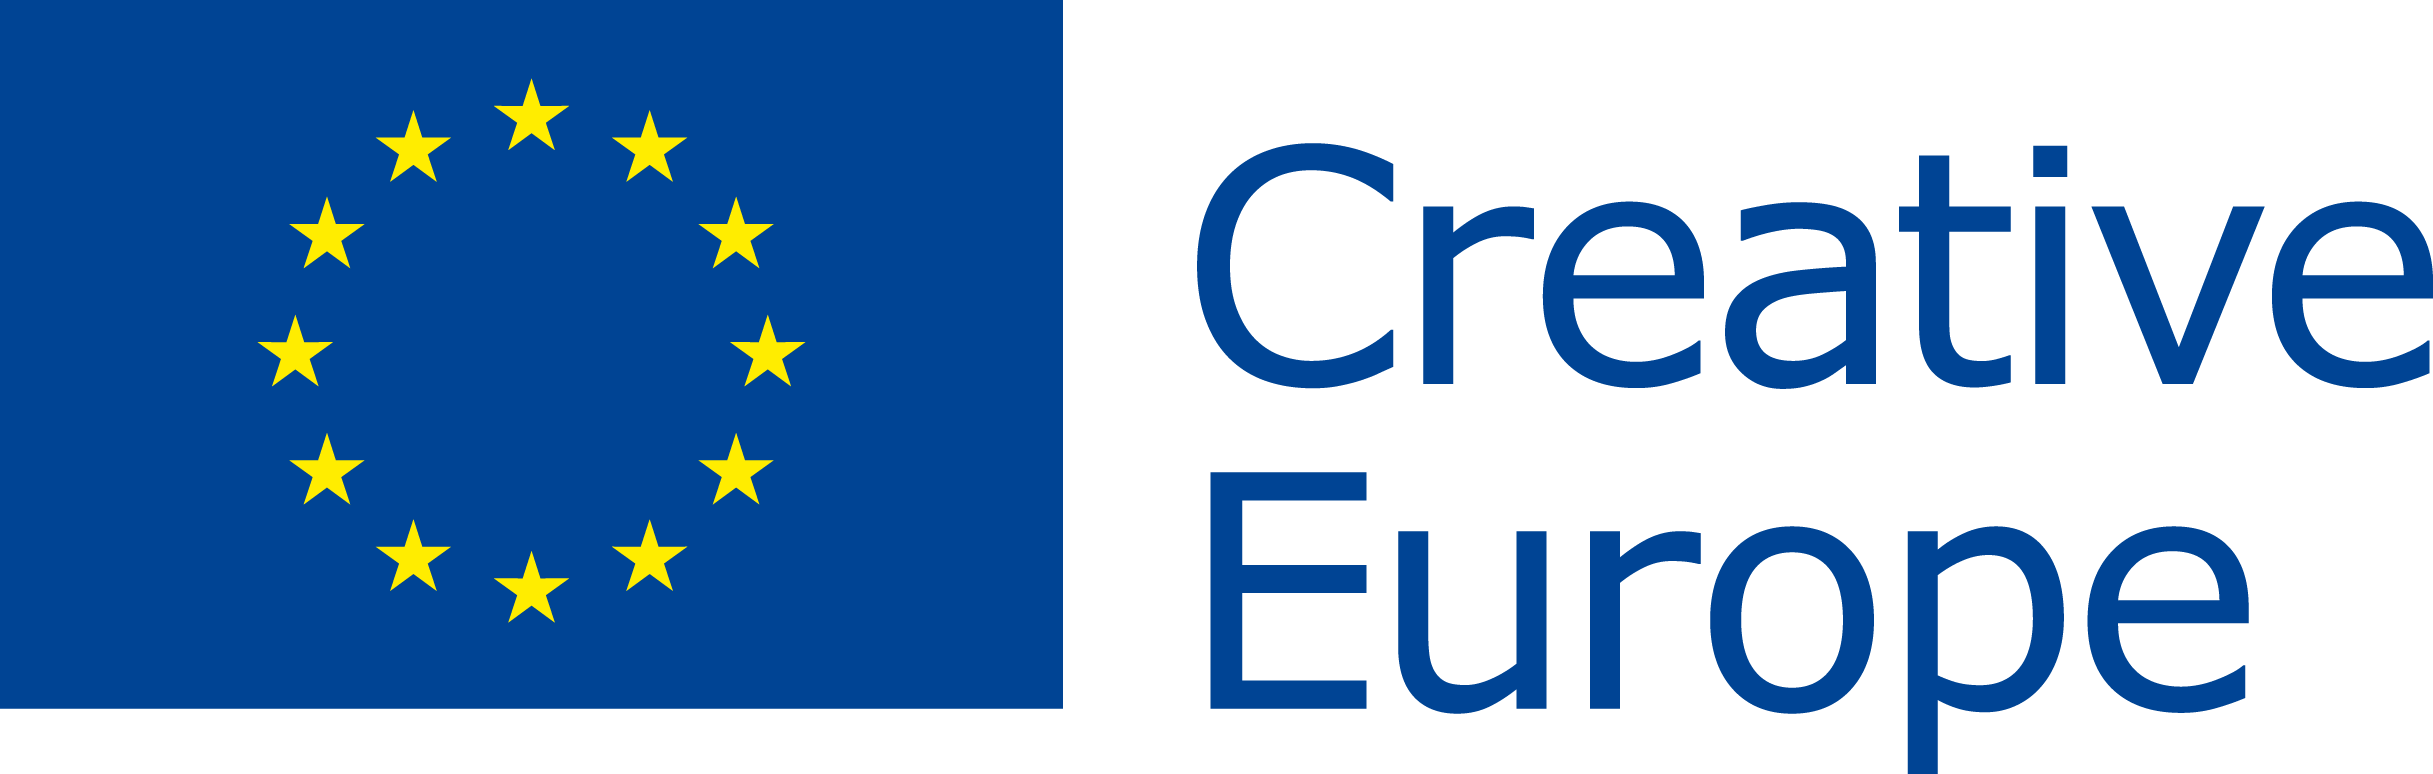 Eu Flag Creative Europe